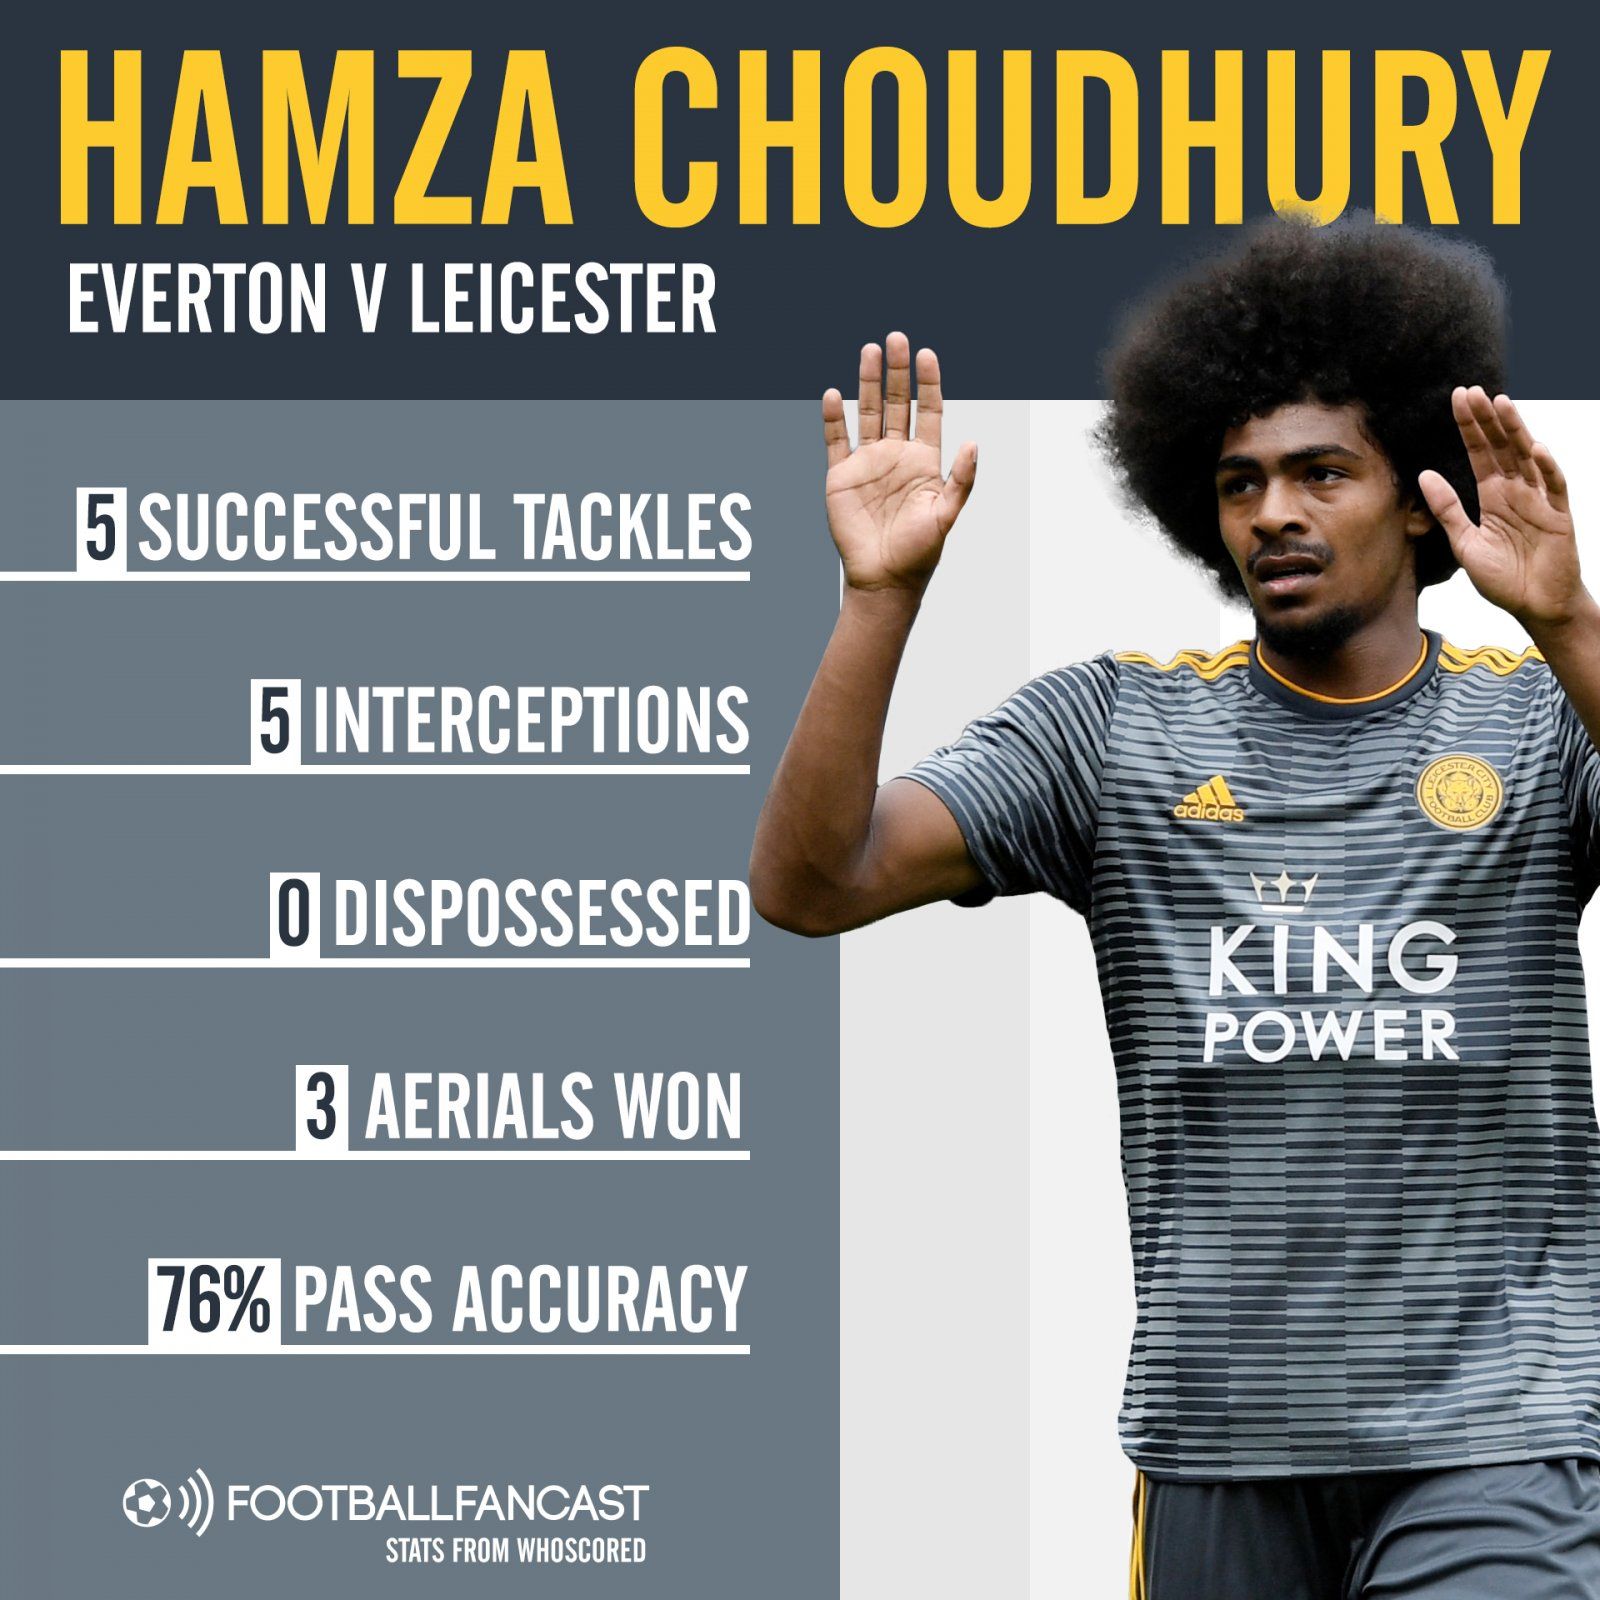 Hamza Choudhury's stats vs Everton